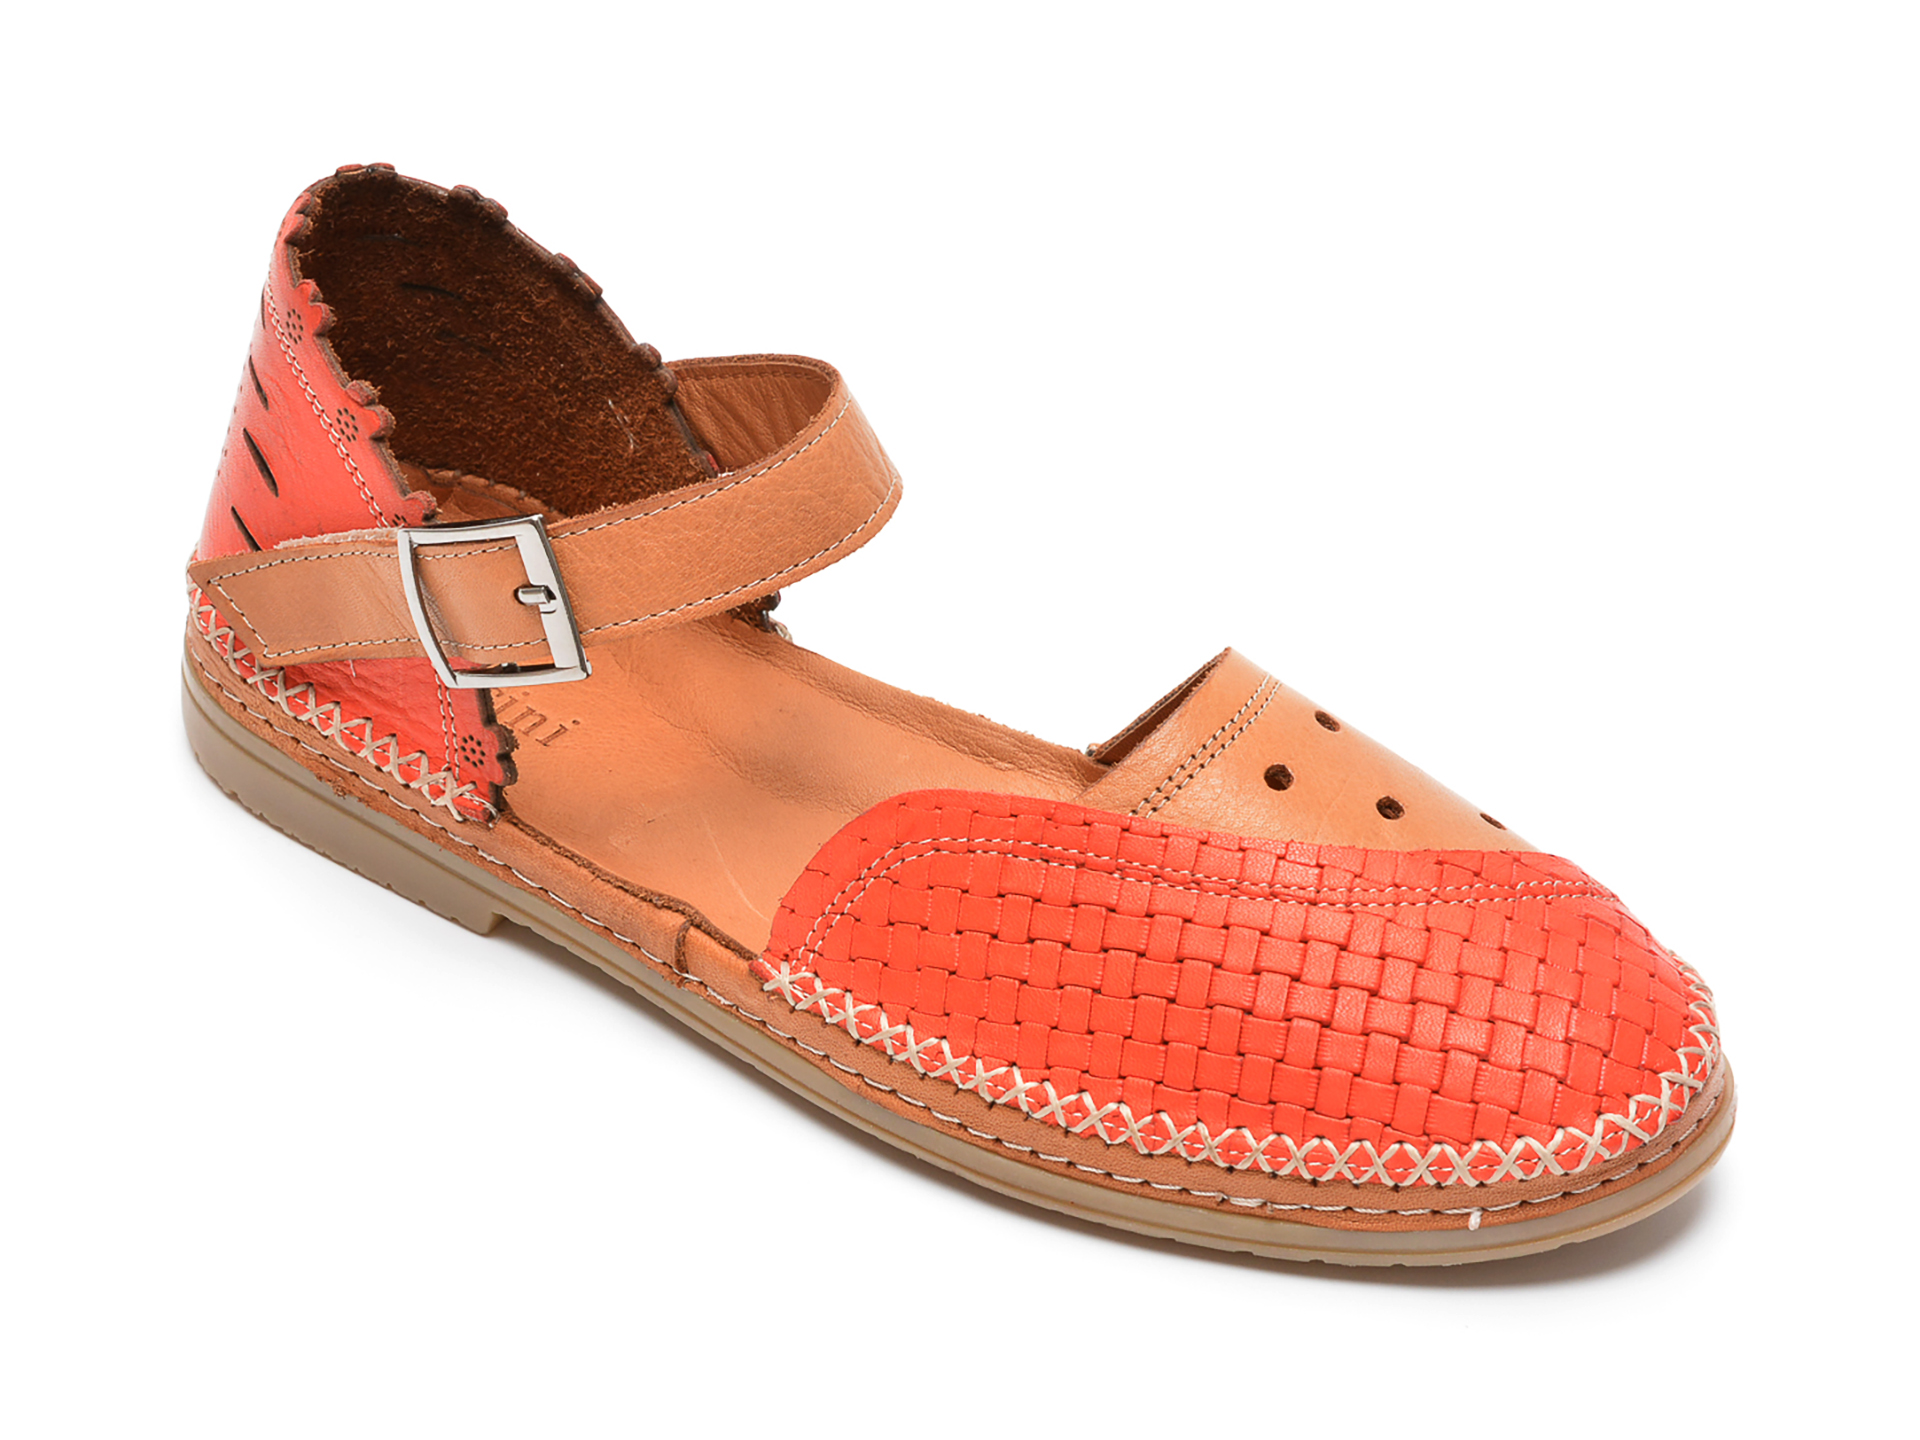 Pantofi FLAVIA PASSINI rosii, 24415, din piele naturala